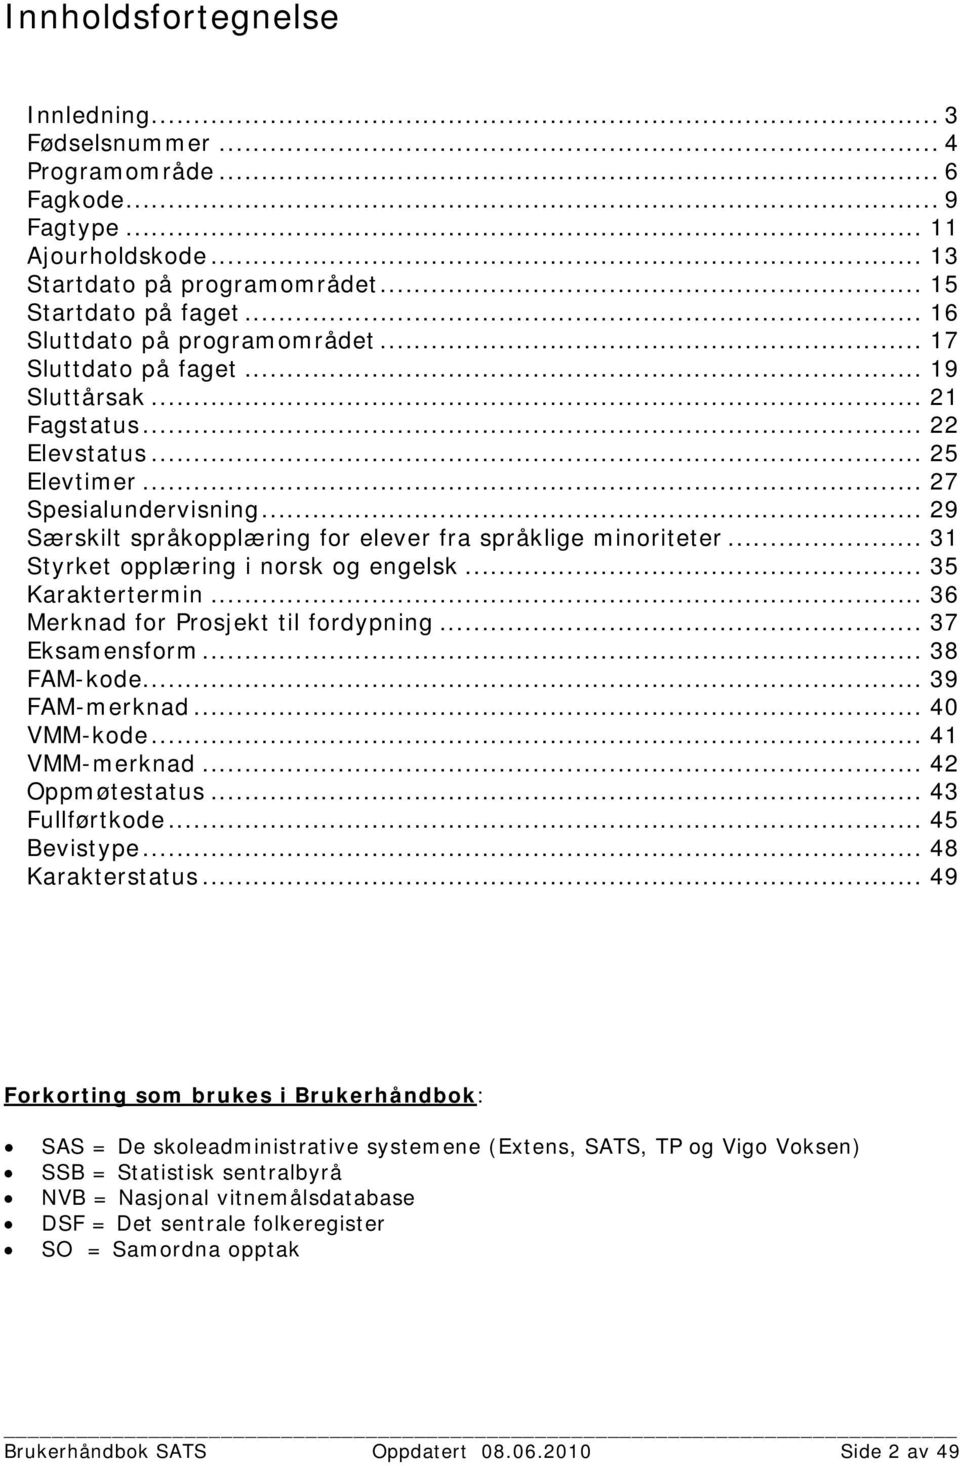 .. 29 Særskilt språkopplæring for elever fra språklige minoriteter... 31 Styrket opplæring i norsk og engelsk... 35 Karaktertermin... 36 Merknad for Prosjekt til fordypning... 37 Eksamensform.